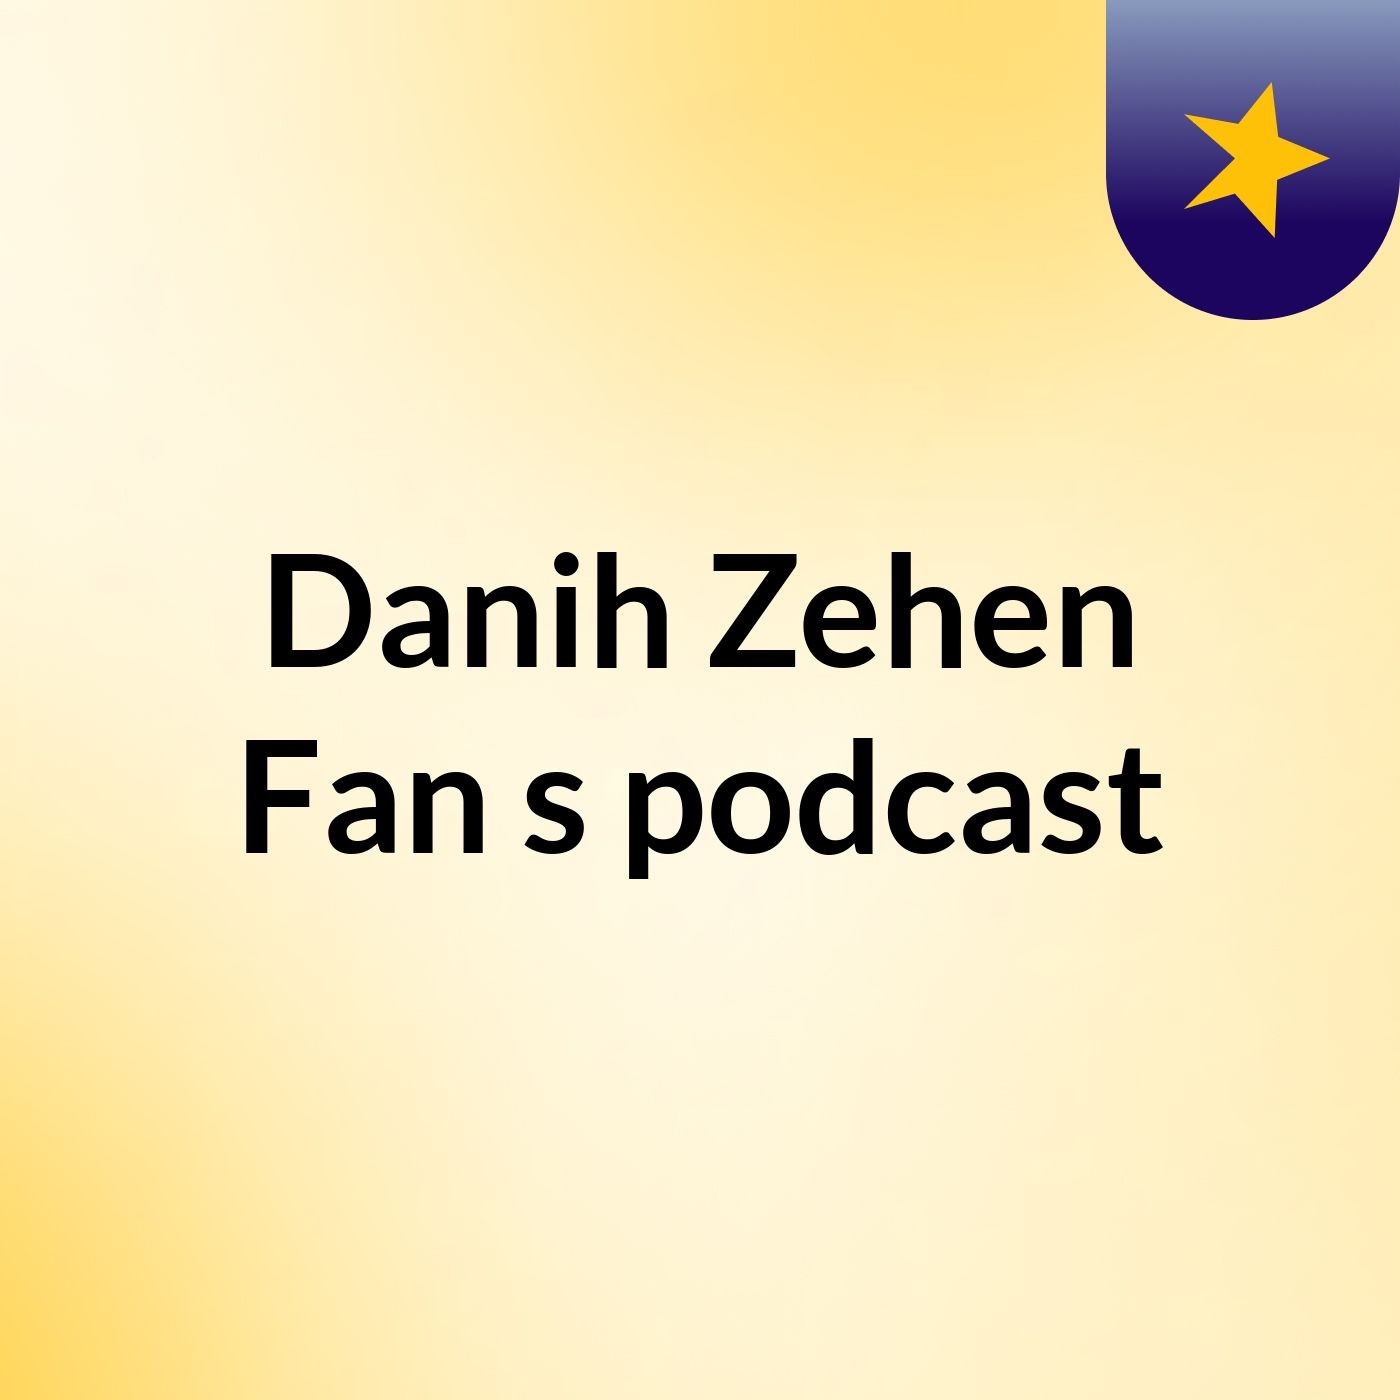 Episode 6 - Danih Zehen Fan's podcast